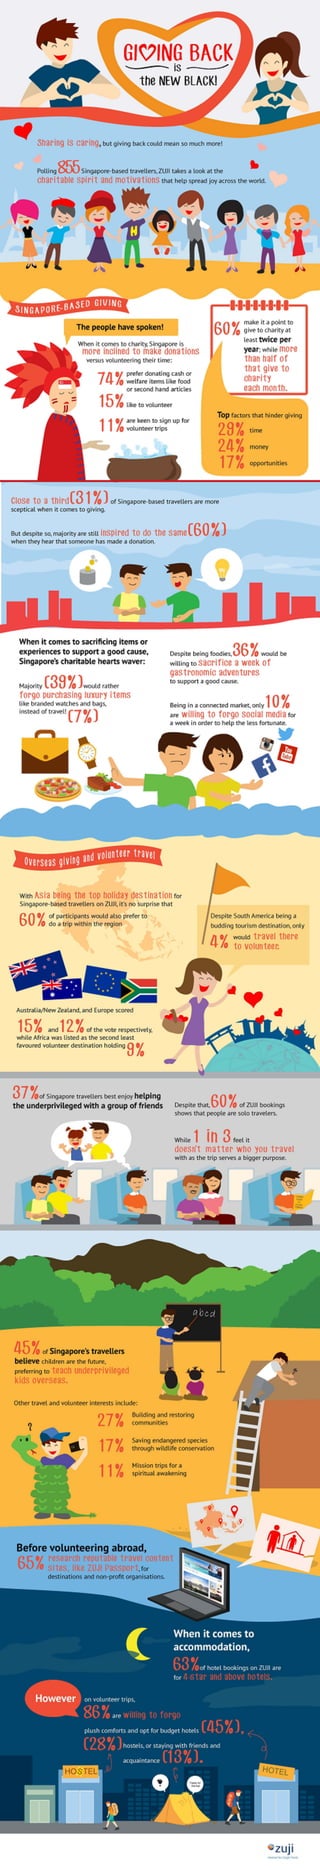 Volunteer Travel - Singaporean Travellers: ZUJI Survey